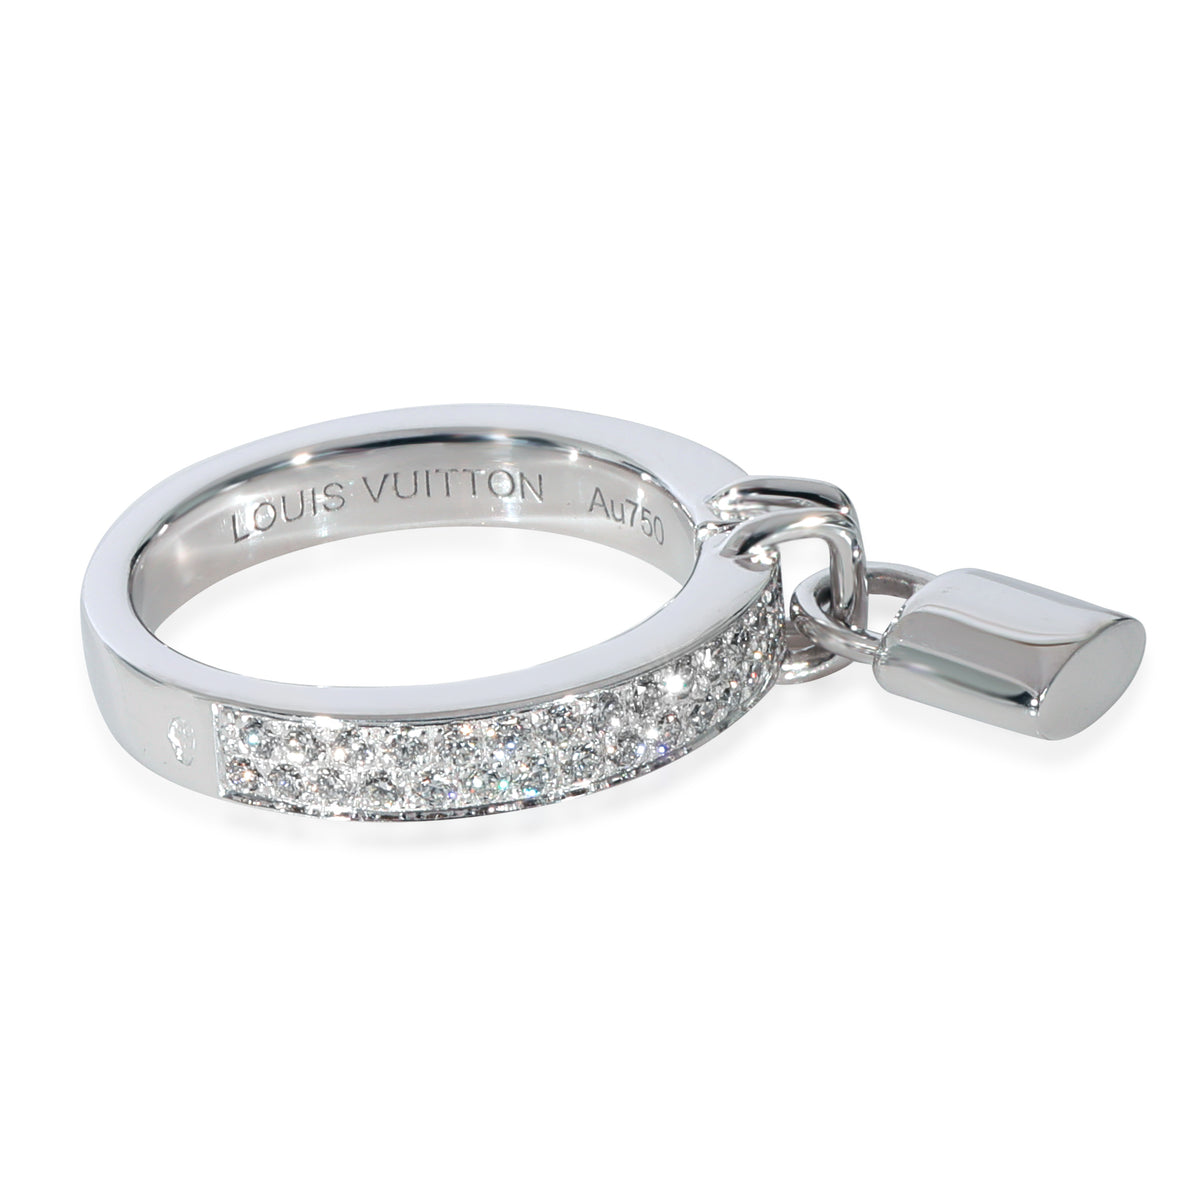 Louis Vuitton 18K Diamond Lockit Ring - 18K White Gold Band, Rings